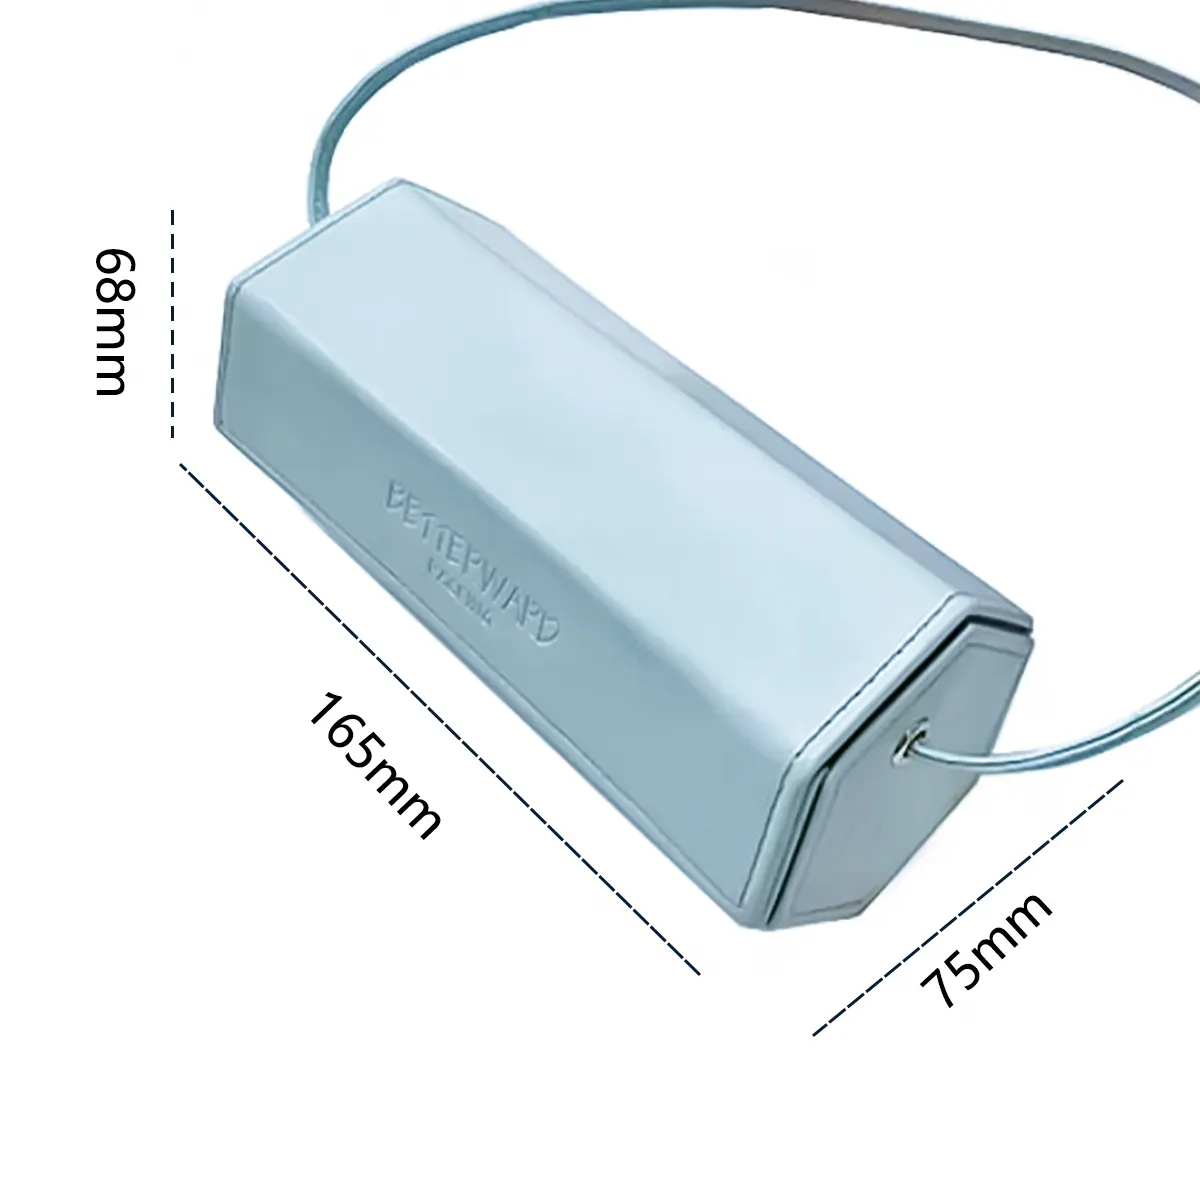 Deri gözlük Metal özel ekran güneş gözlüğü lüks paketleme makinesi yumuşak logolu kağıt Pu optik gözlük kutusu kasa